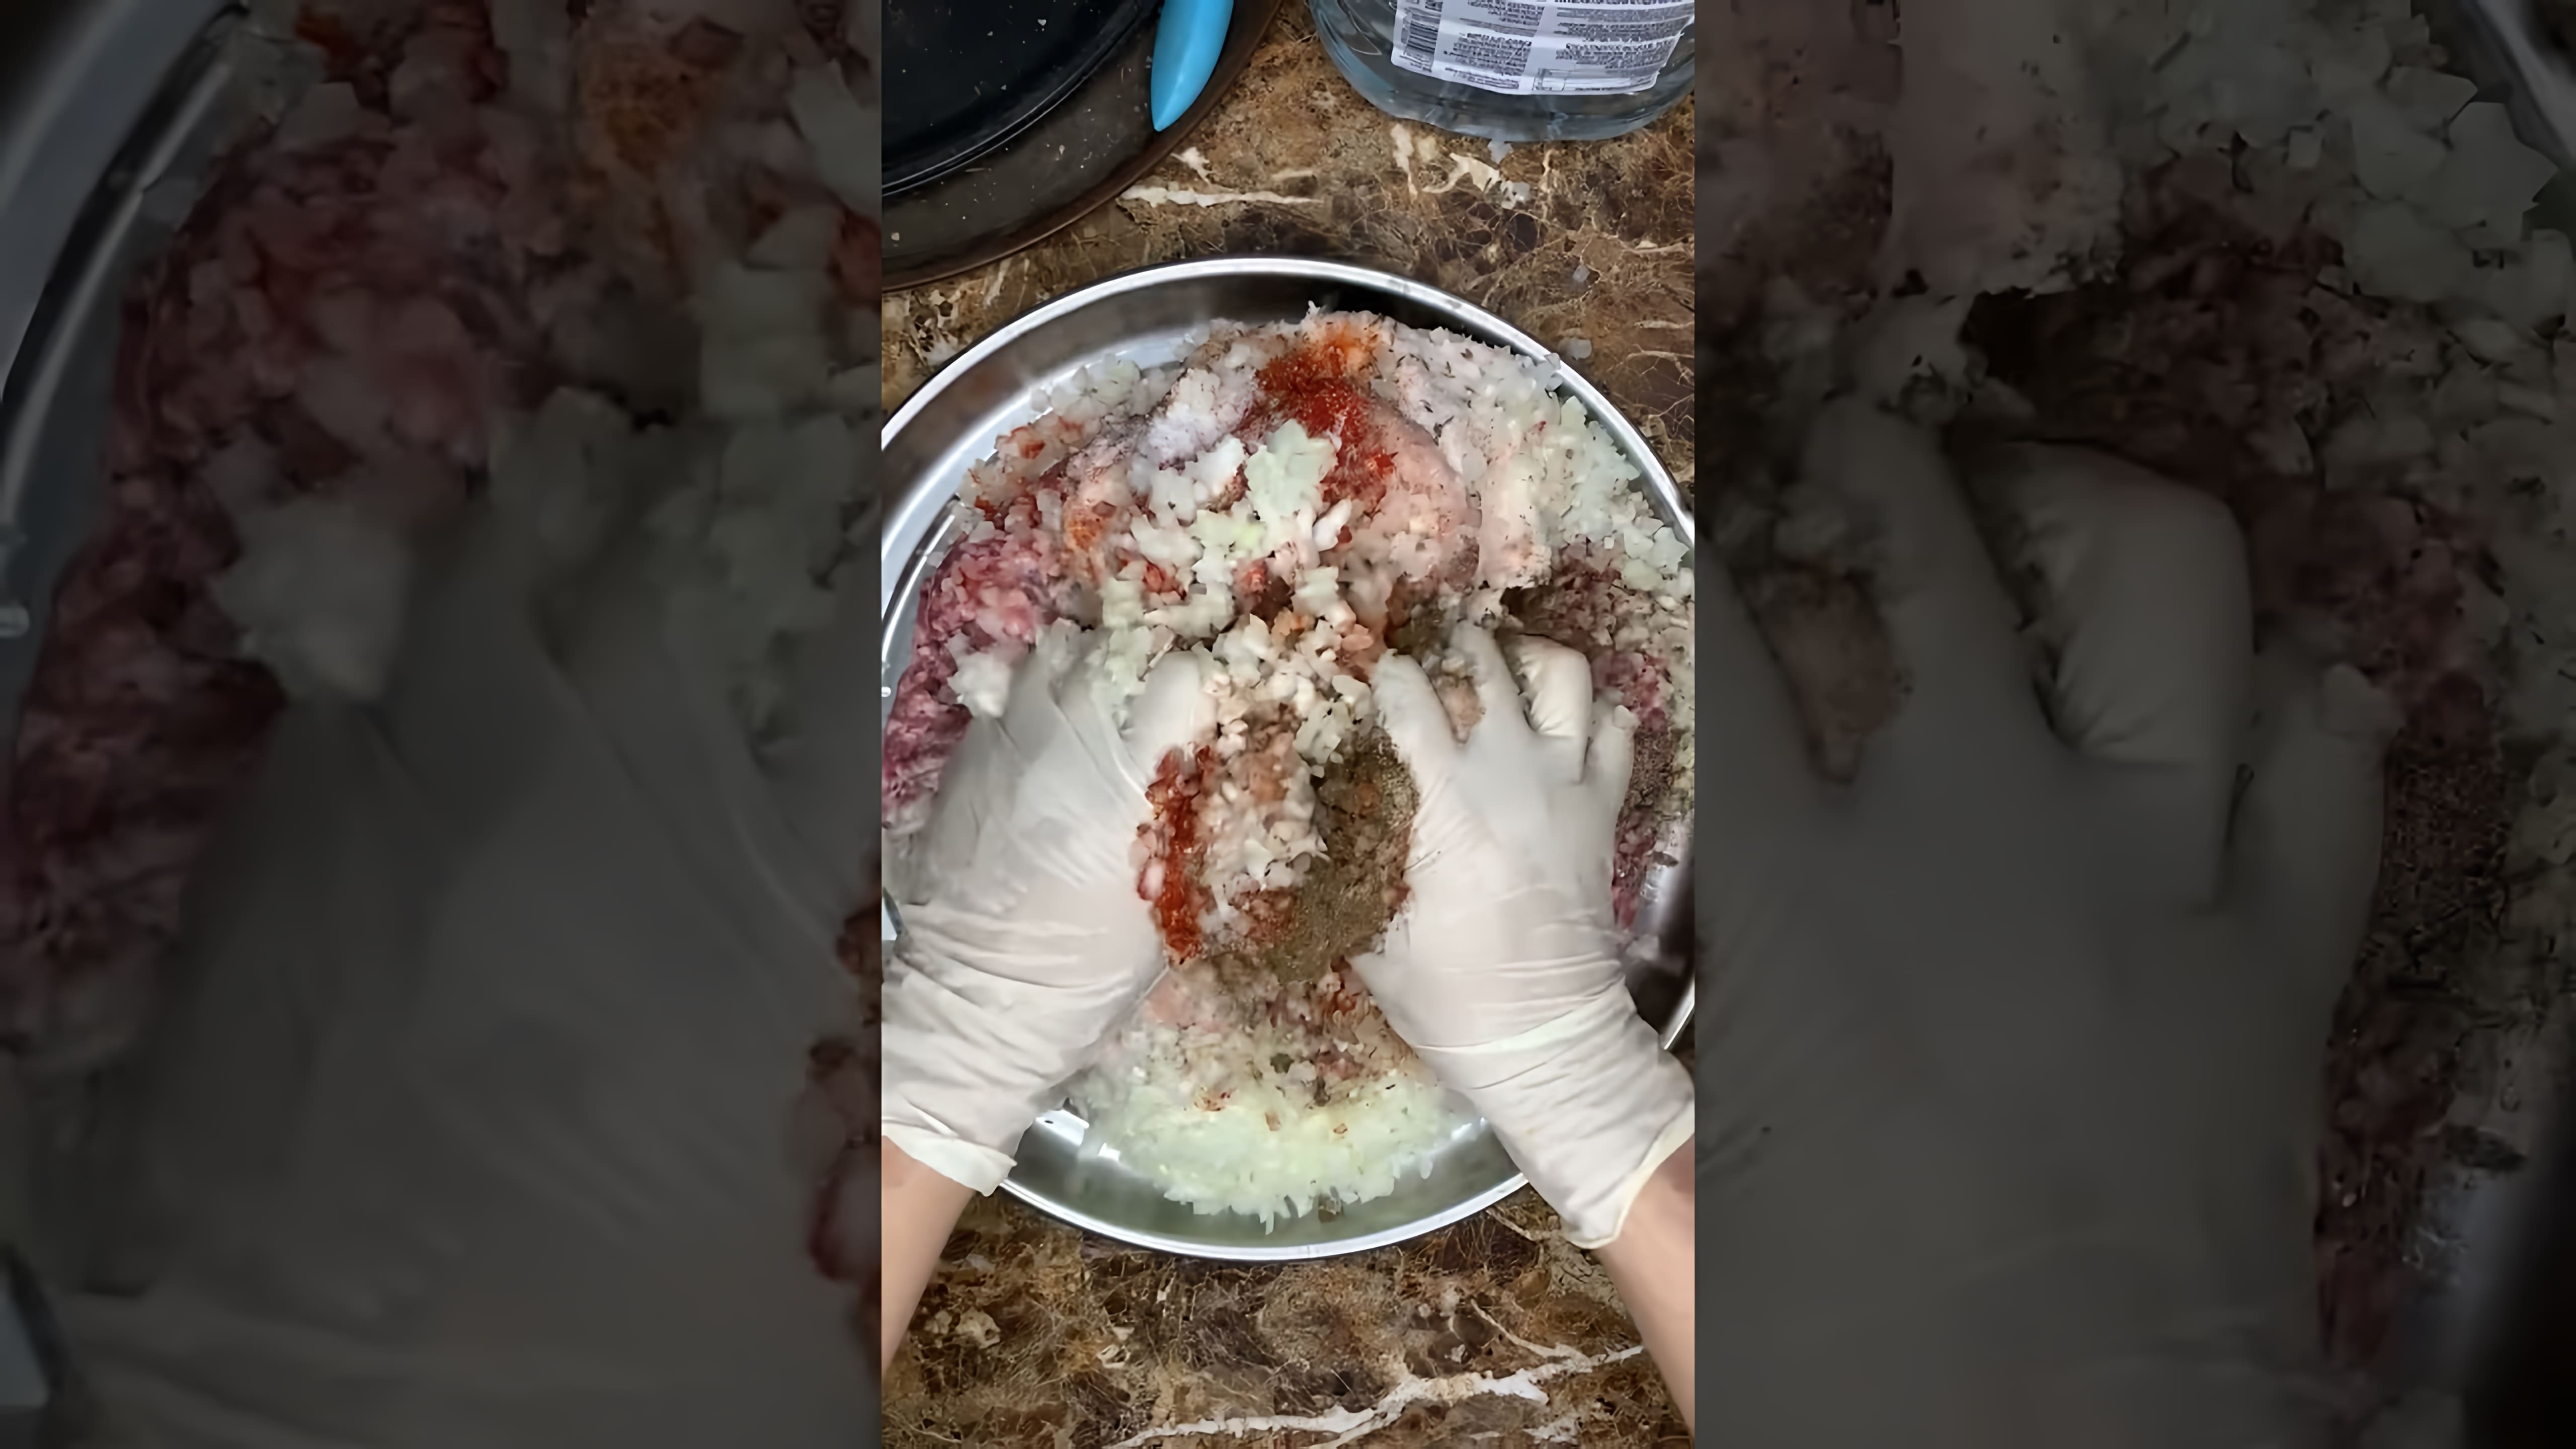 Видео описывает, как приготовить луля-кебаб, вид кебаба из мелко рубленого мяса